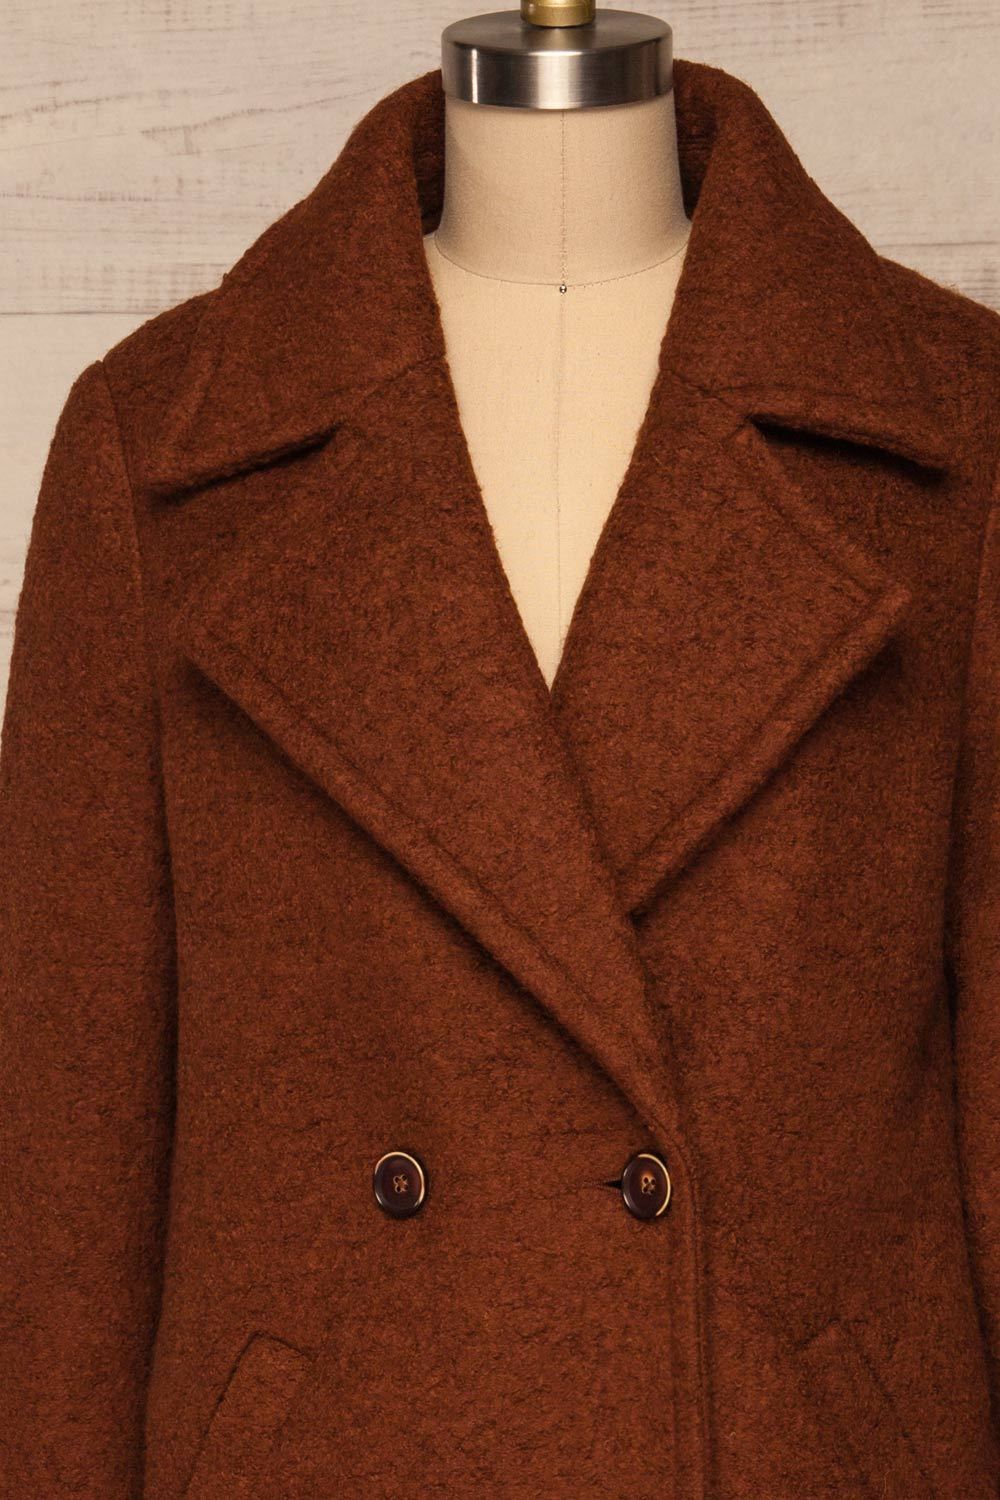 Fangdalen Cognac Brown Coat | Manteau Brun front close up close | La Petite Garçonne